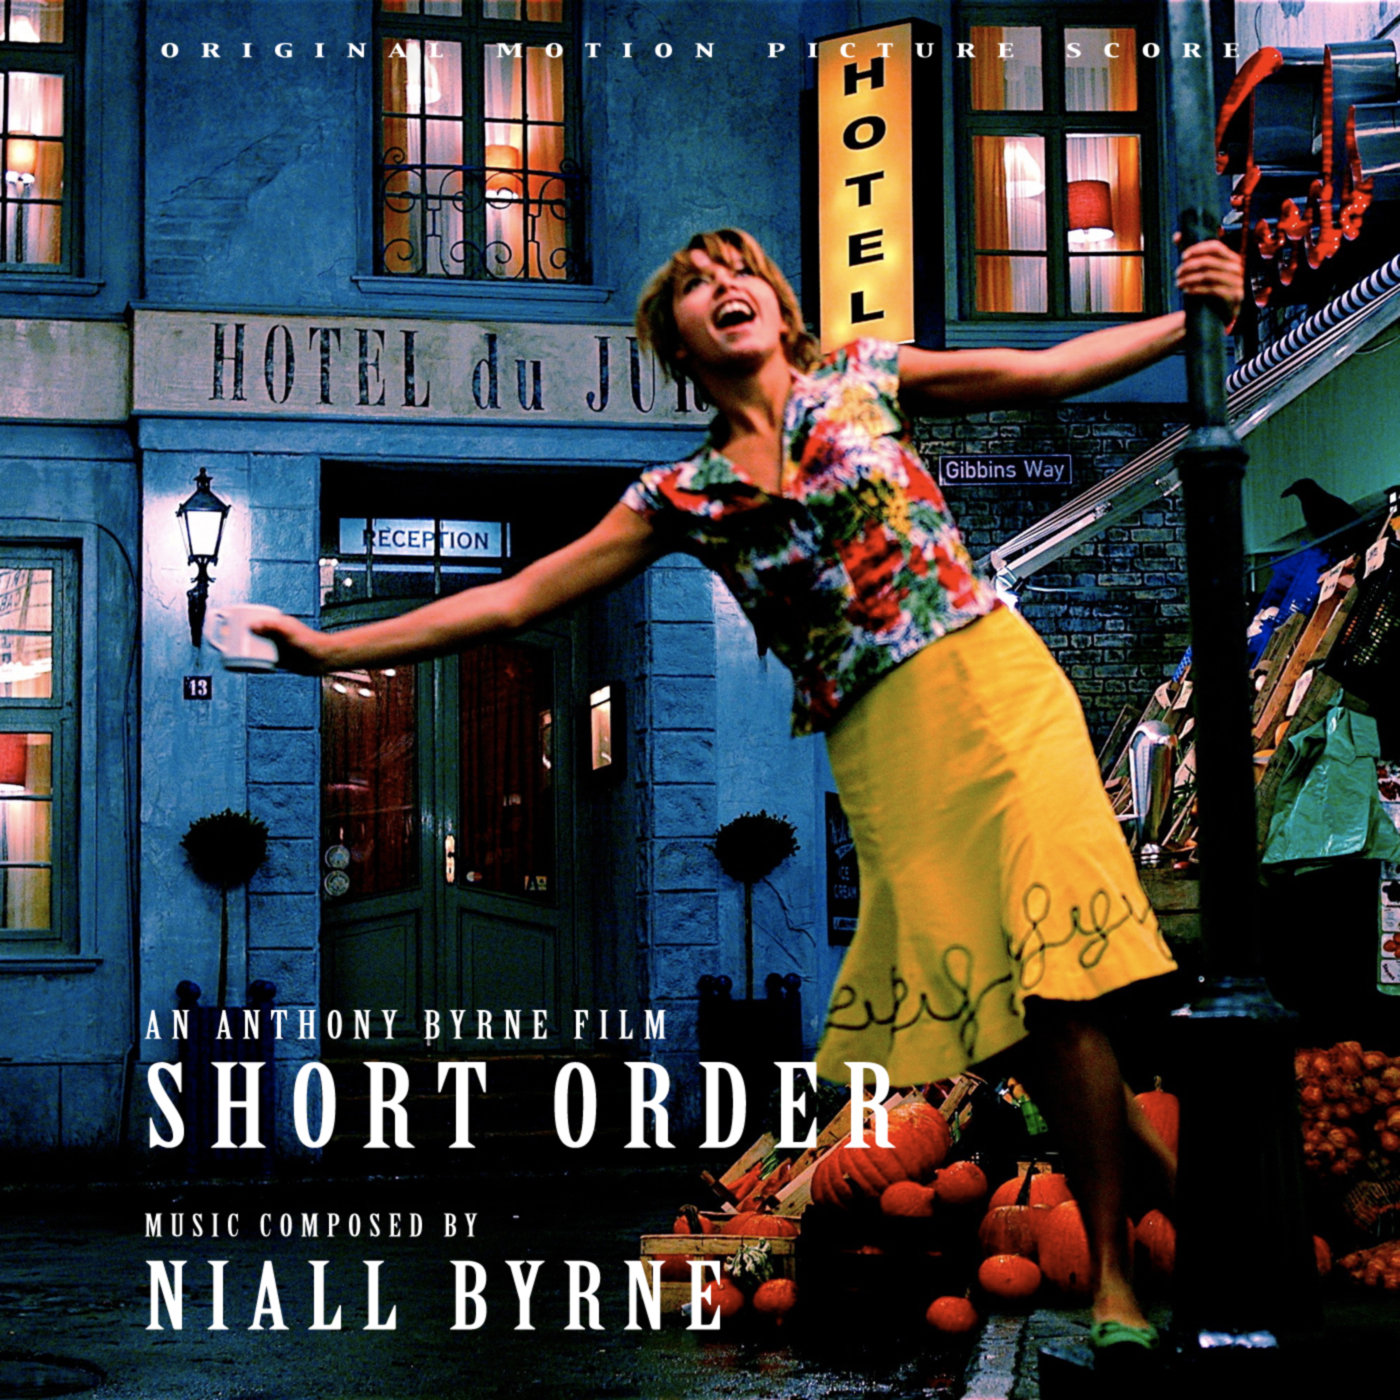 Short order. Niall Byrne. Short orders.